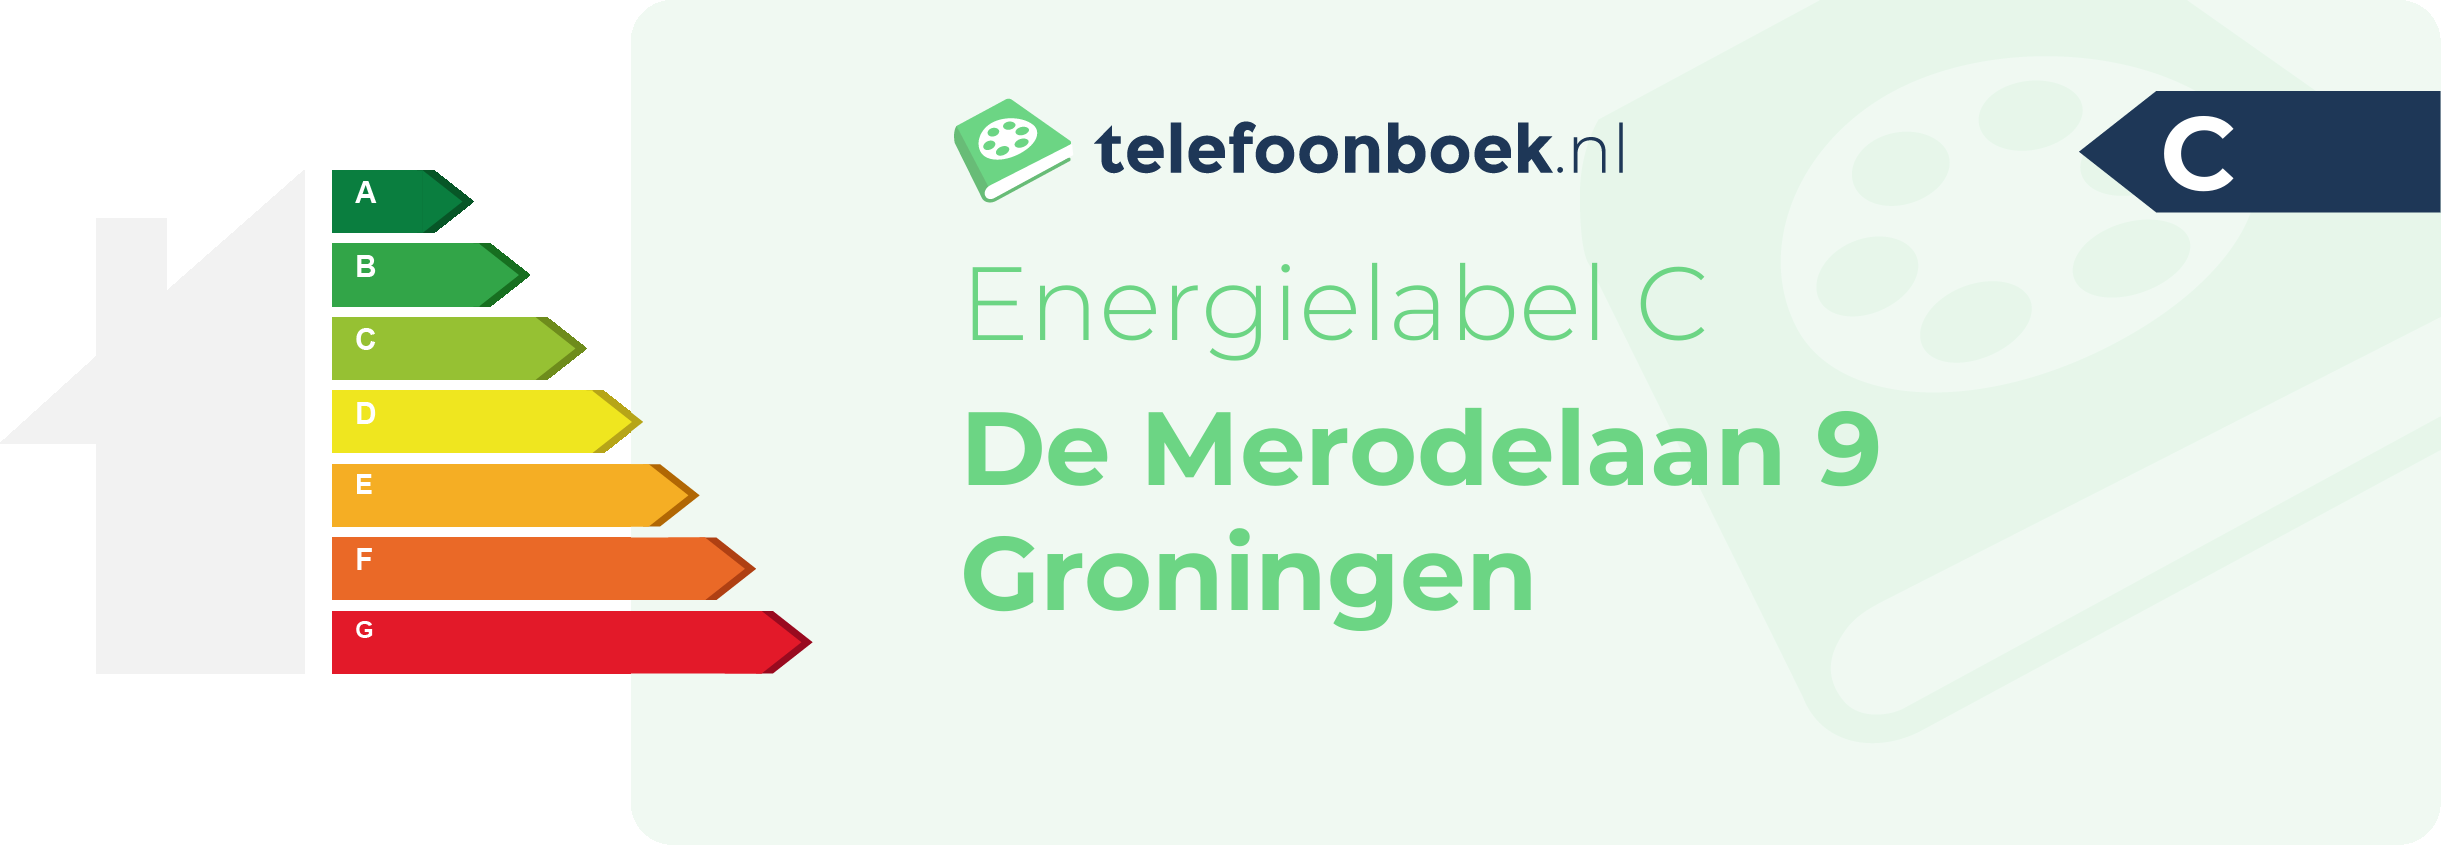 Energielabel De Merodelaan 9 Groningen